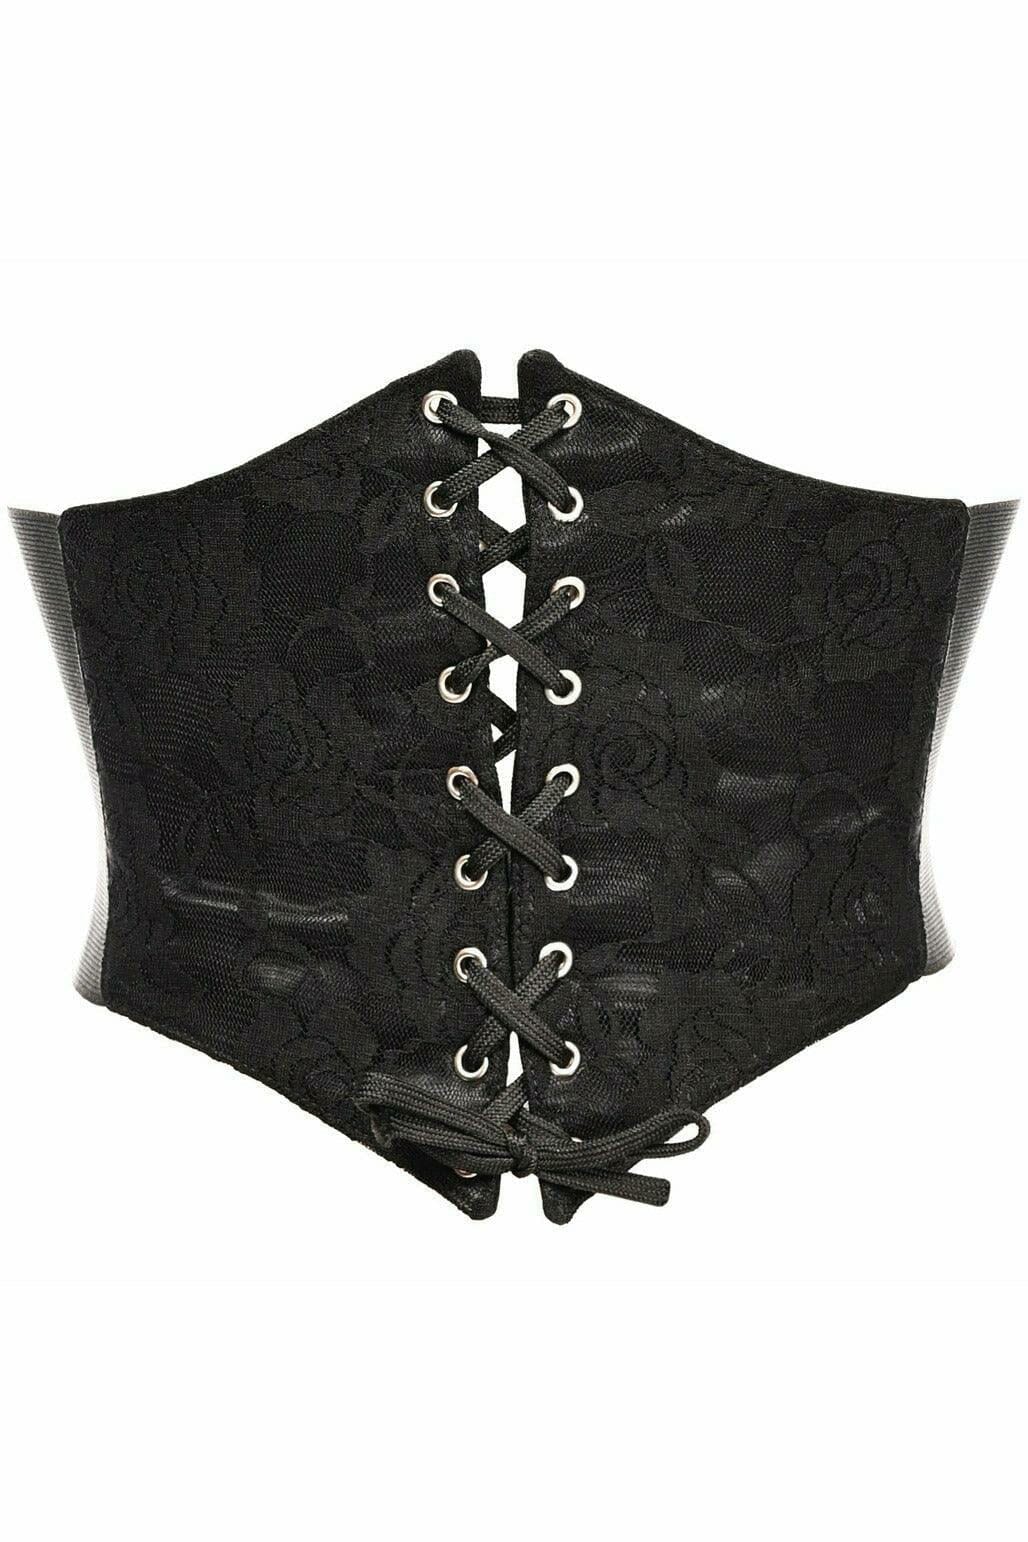 Lavish Black w/Black Lace Overlay Corset Belt Cincher-Corset Belts-Daisy Corsets-Black-S-SEXYSHOES.COM